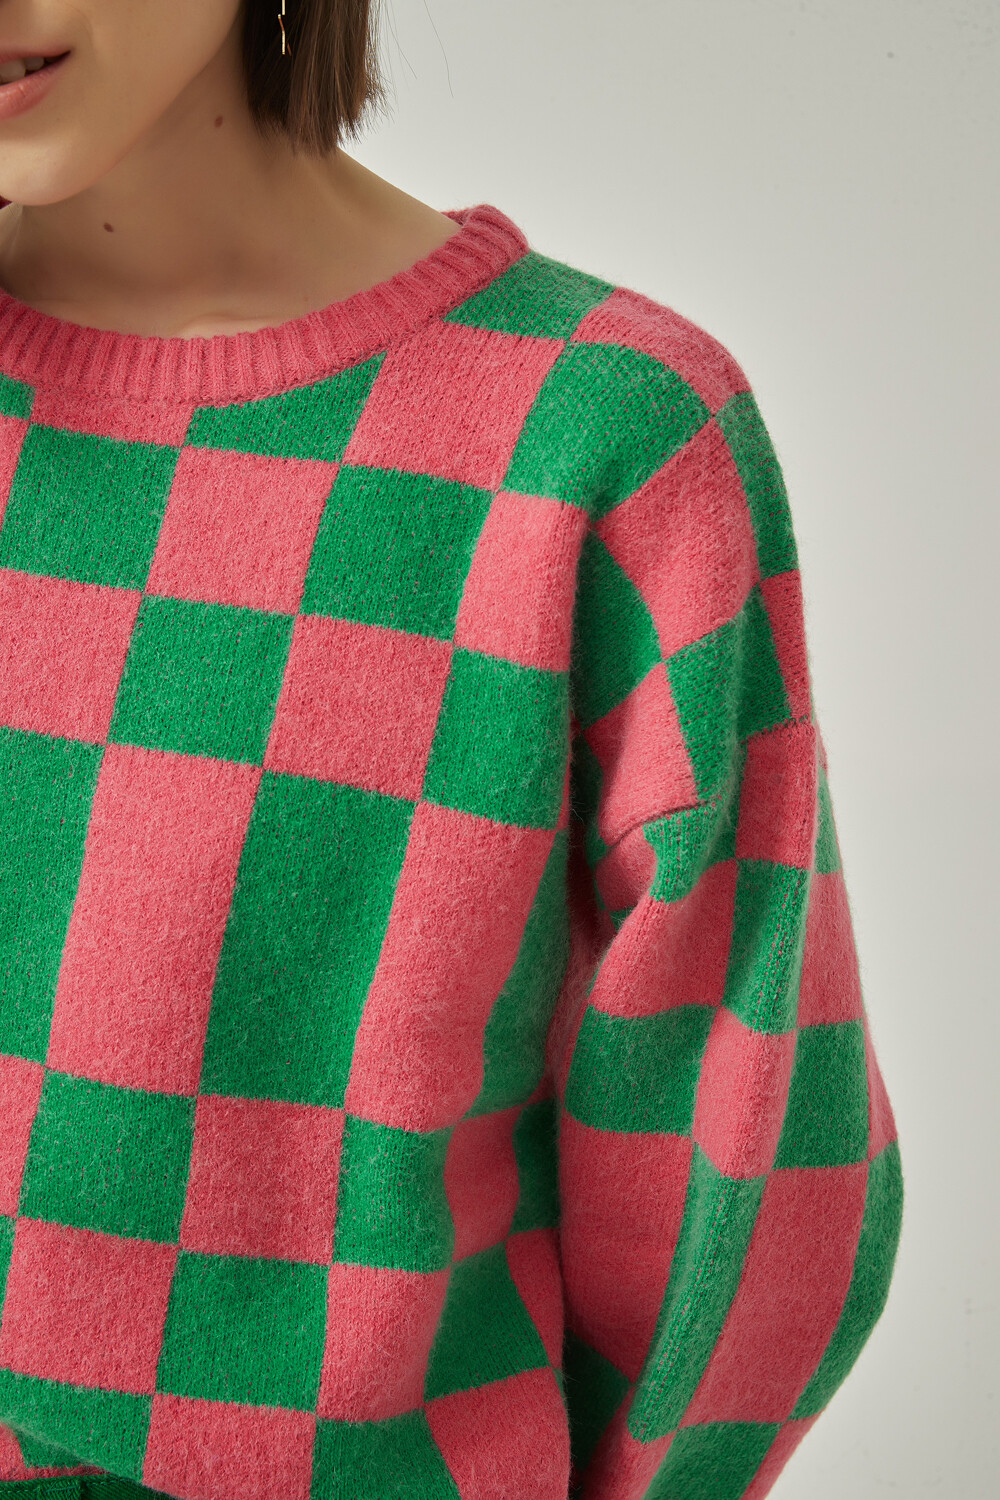 Sweater Anapaul Estampado 1